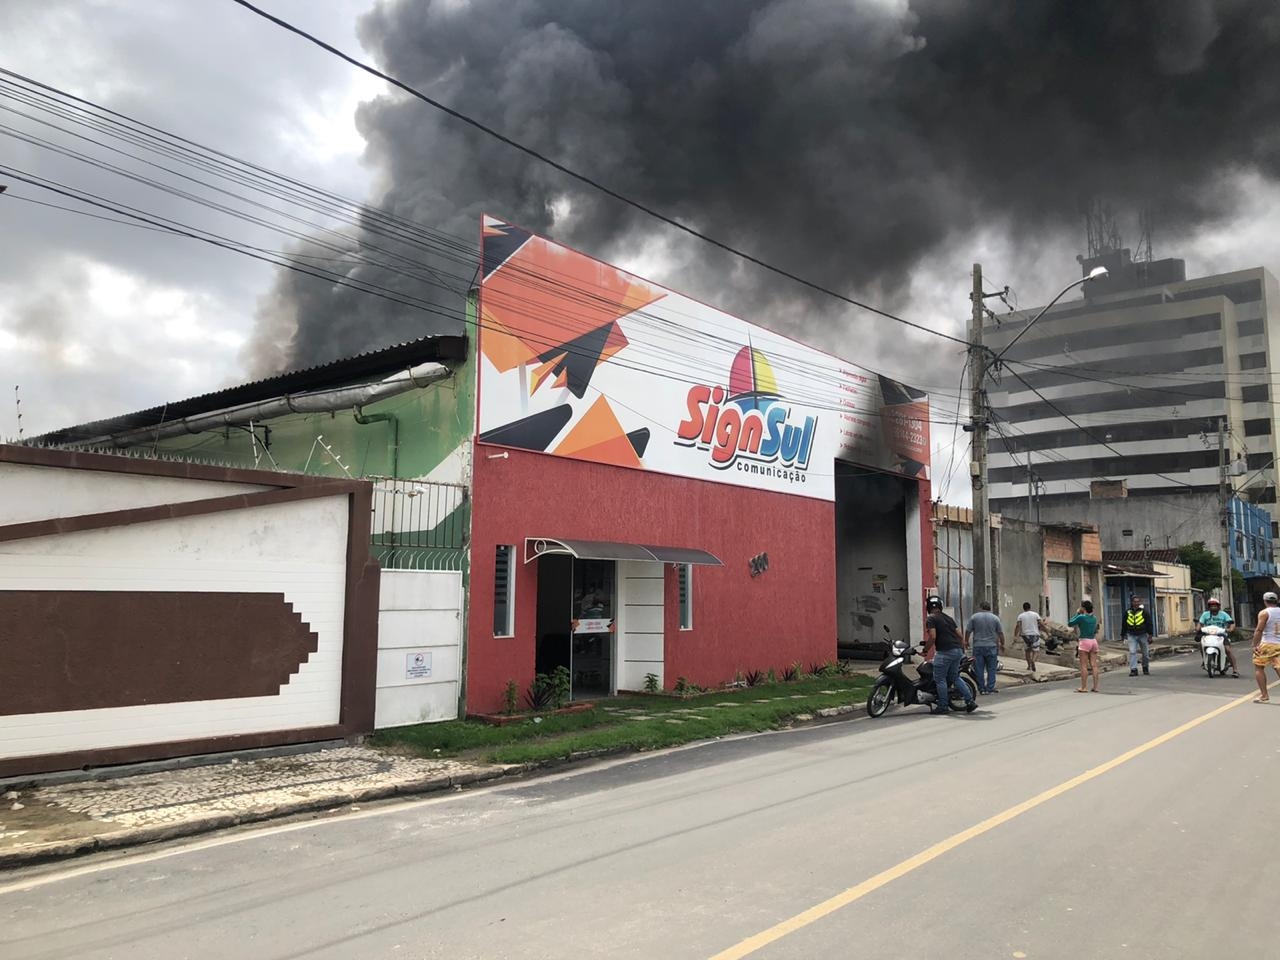 Incndio atinge empresa Sign Sul no centro de Eunpolis. (Foto: BAHIA DIA A DIA)